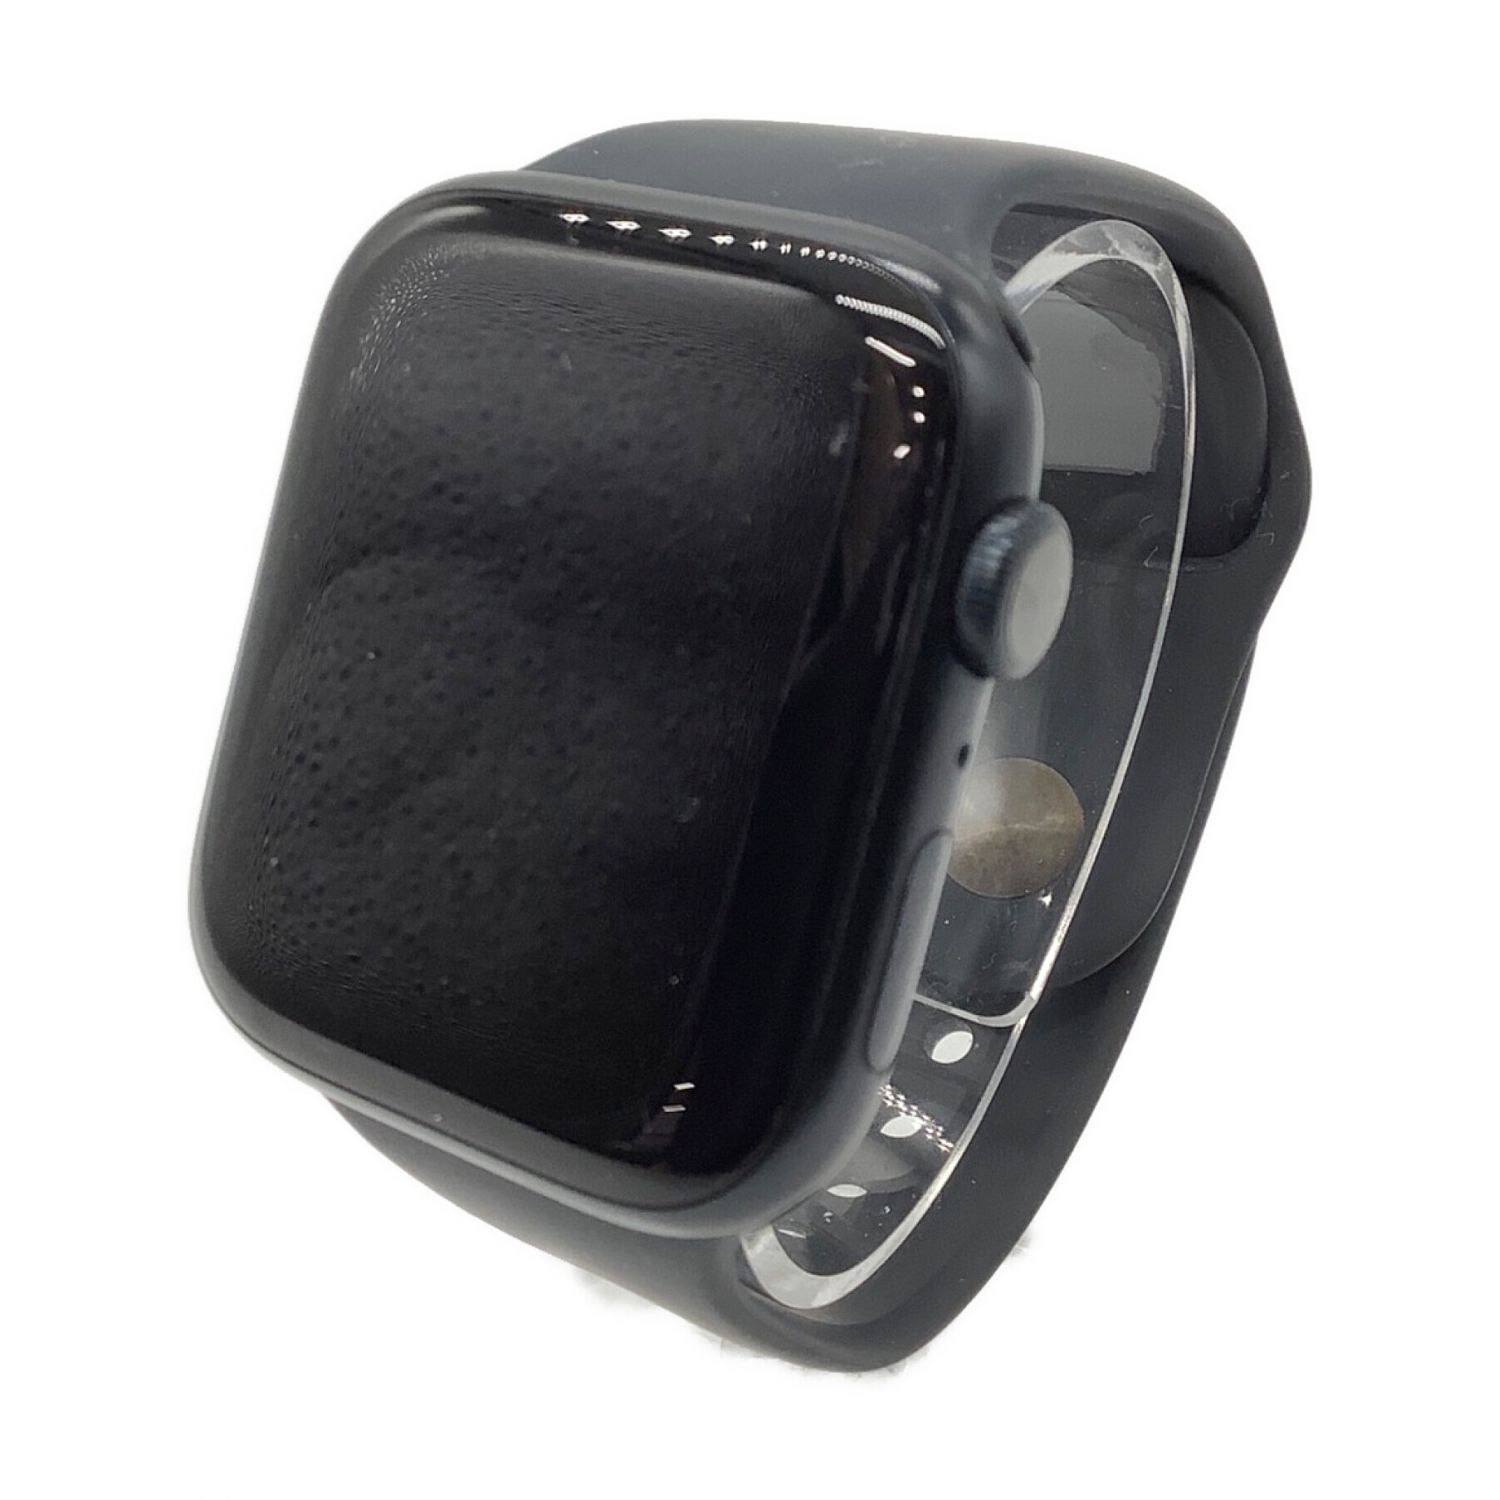 Apple (アップル) Apple Watch Series 7 A2474 GPSモデル ケースサイズ